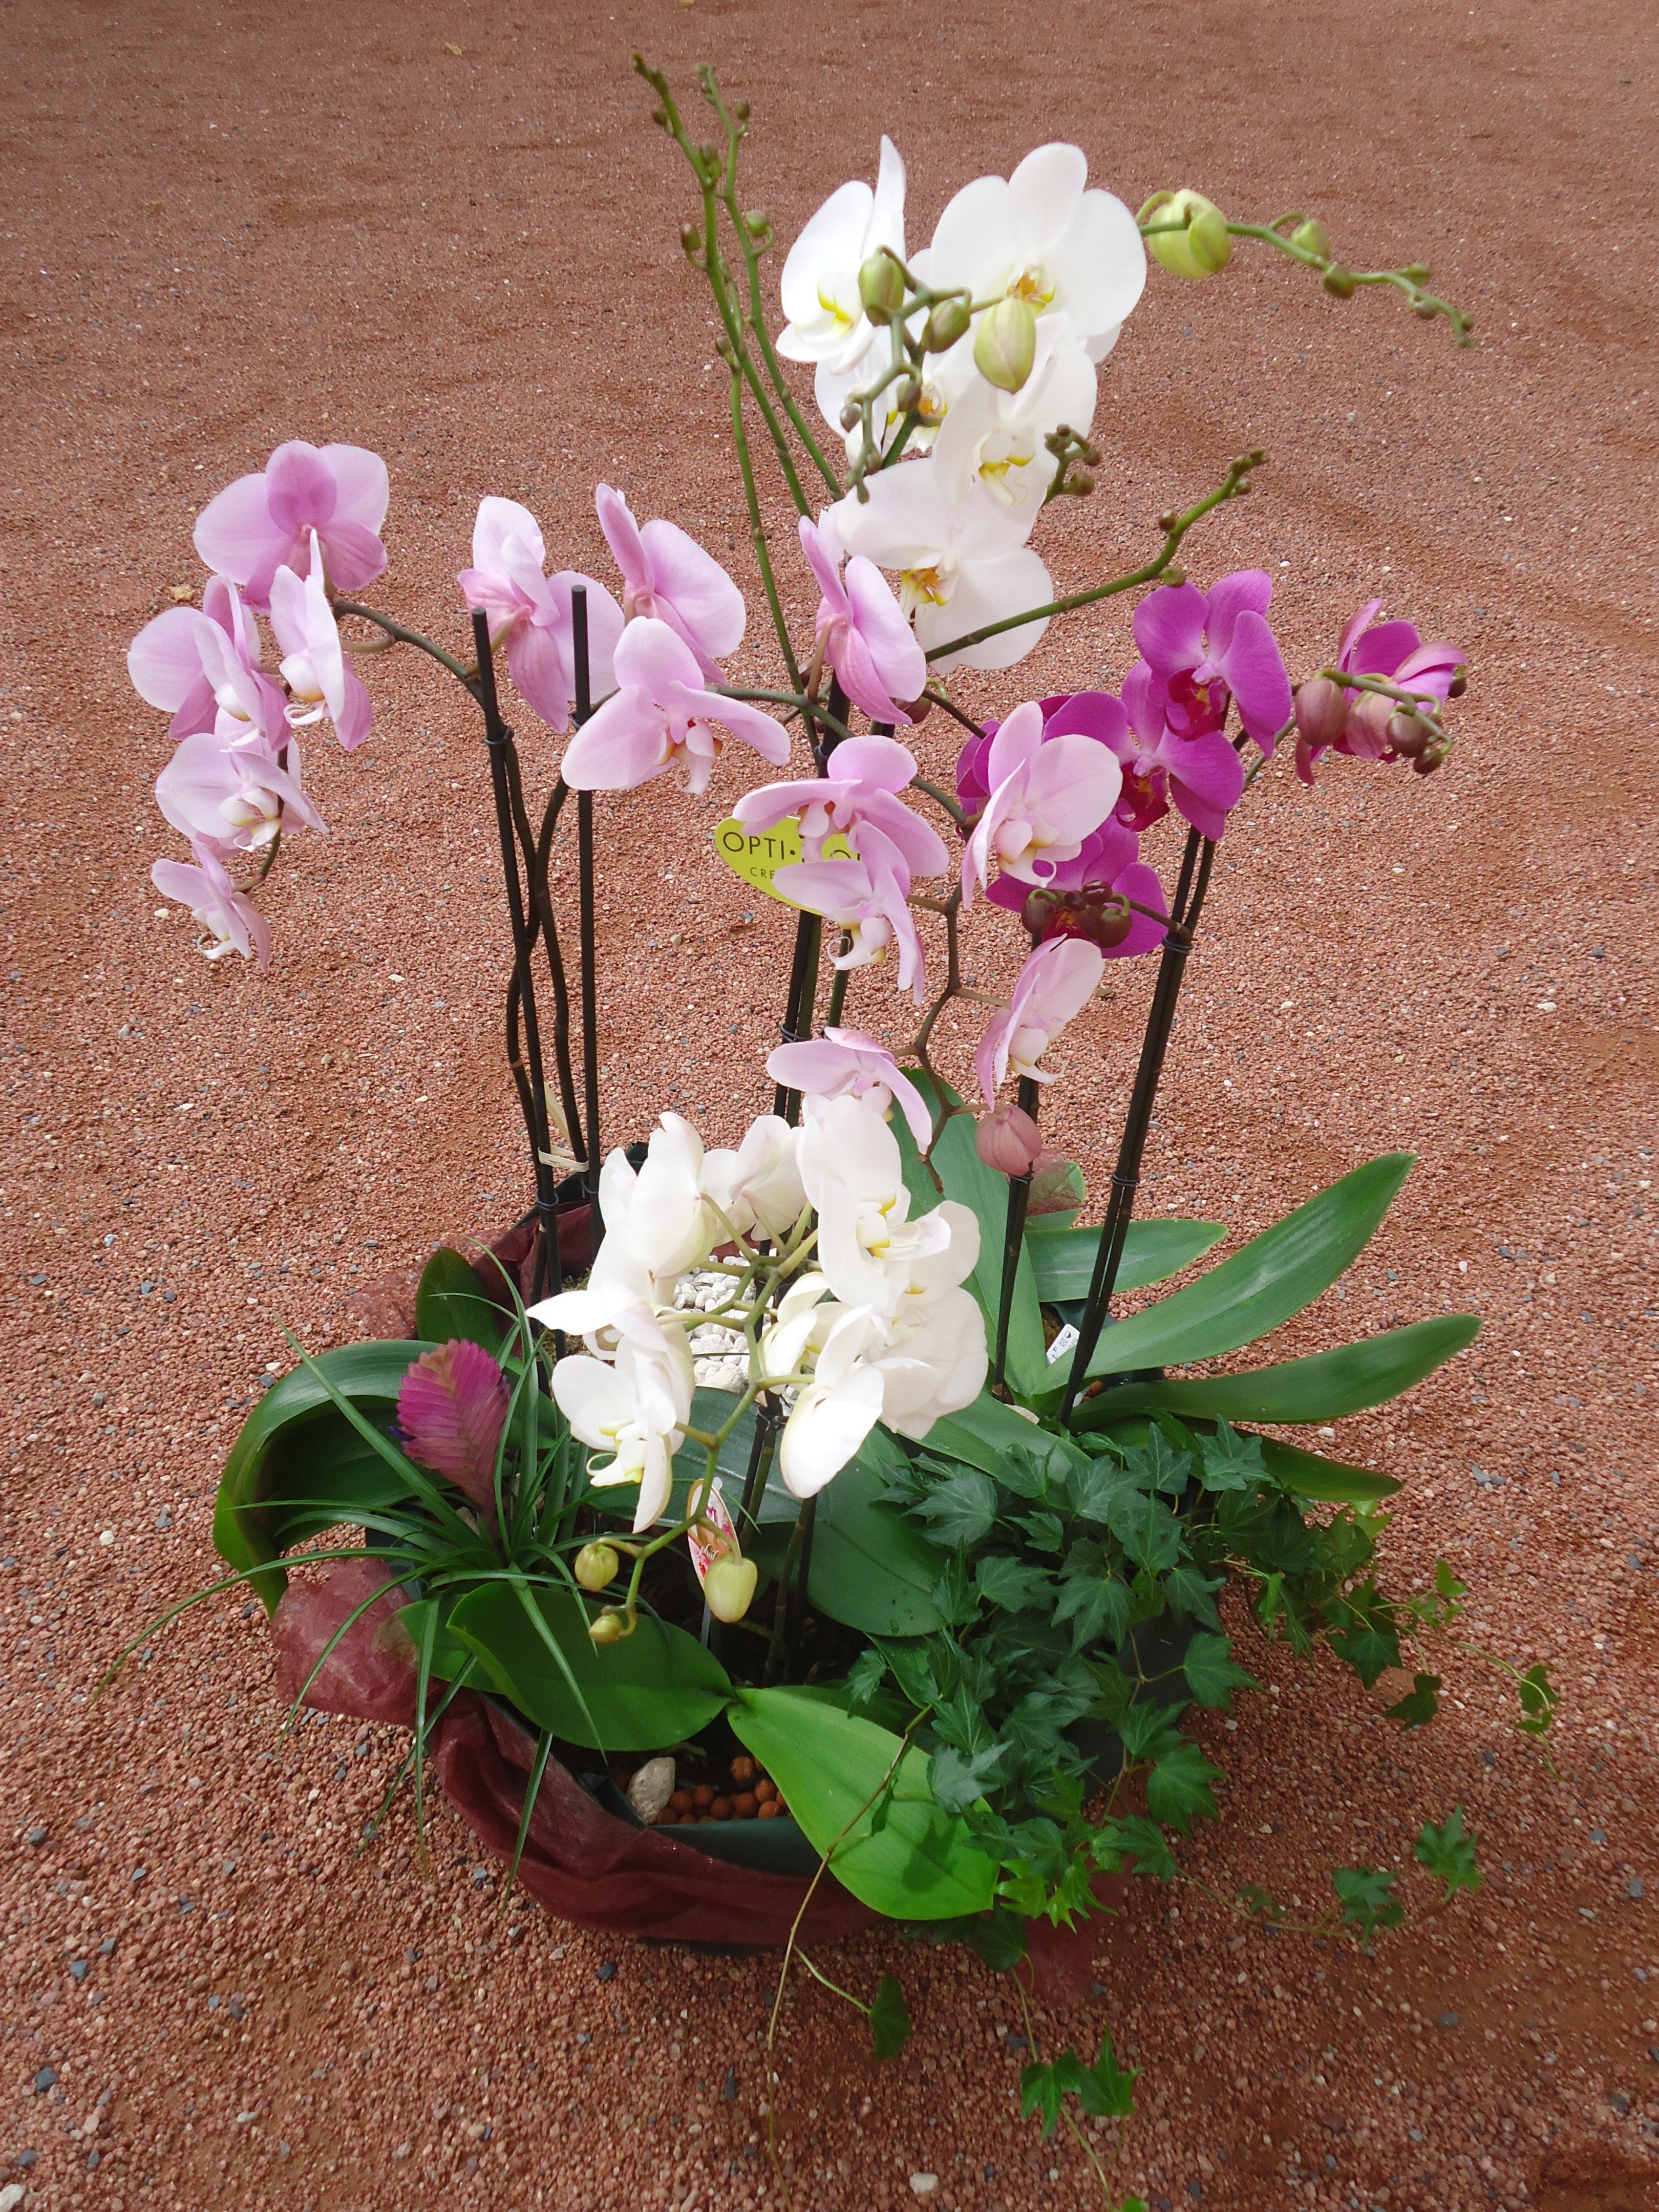 Plante d'orchidée architecturale